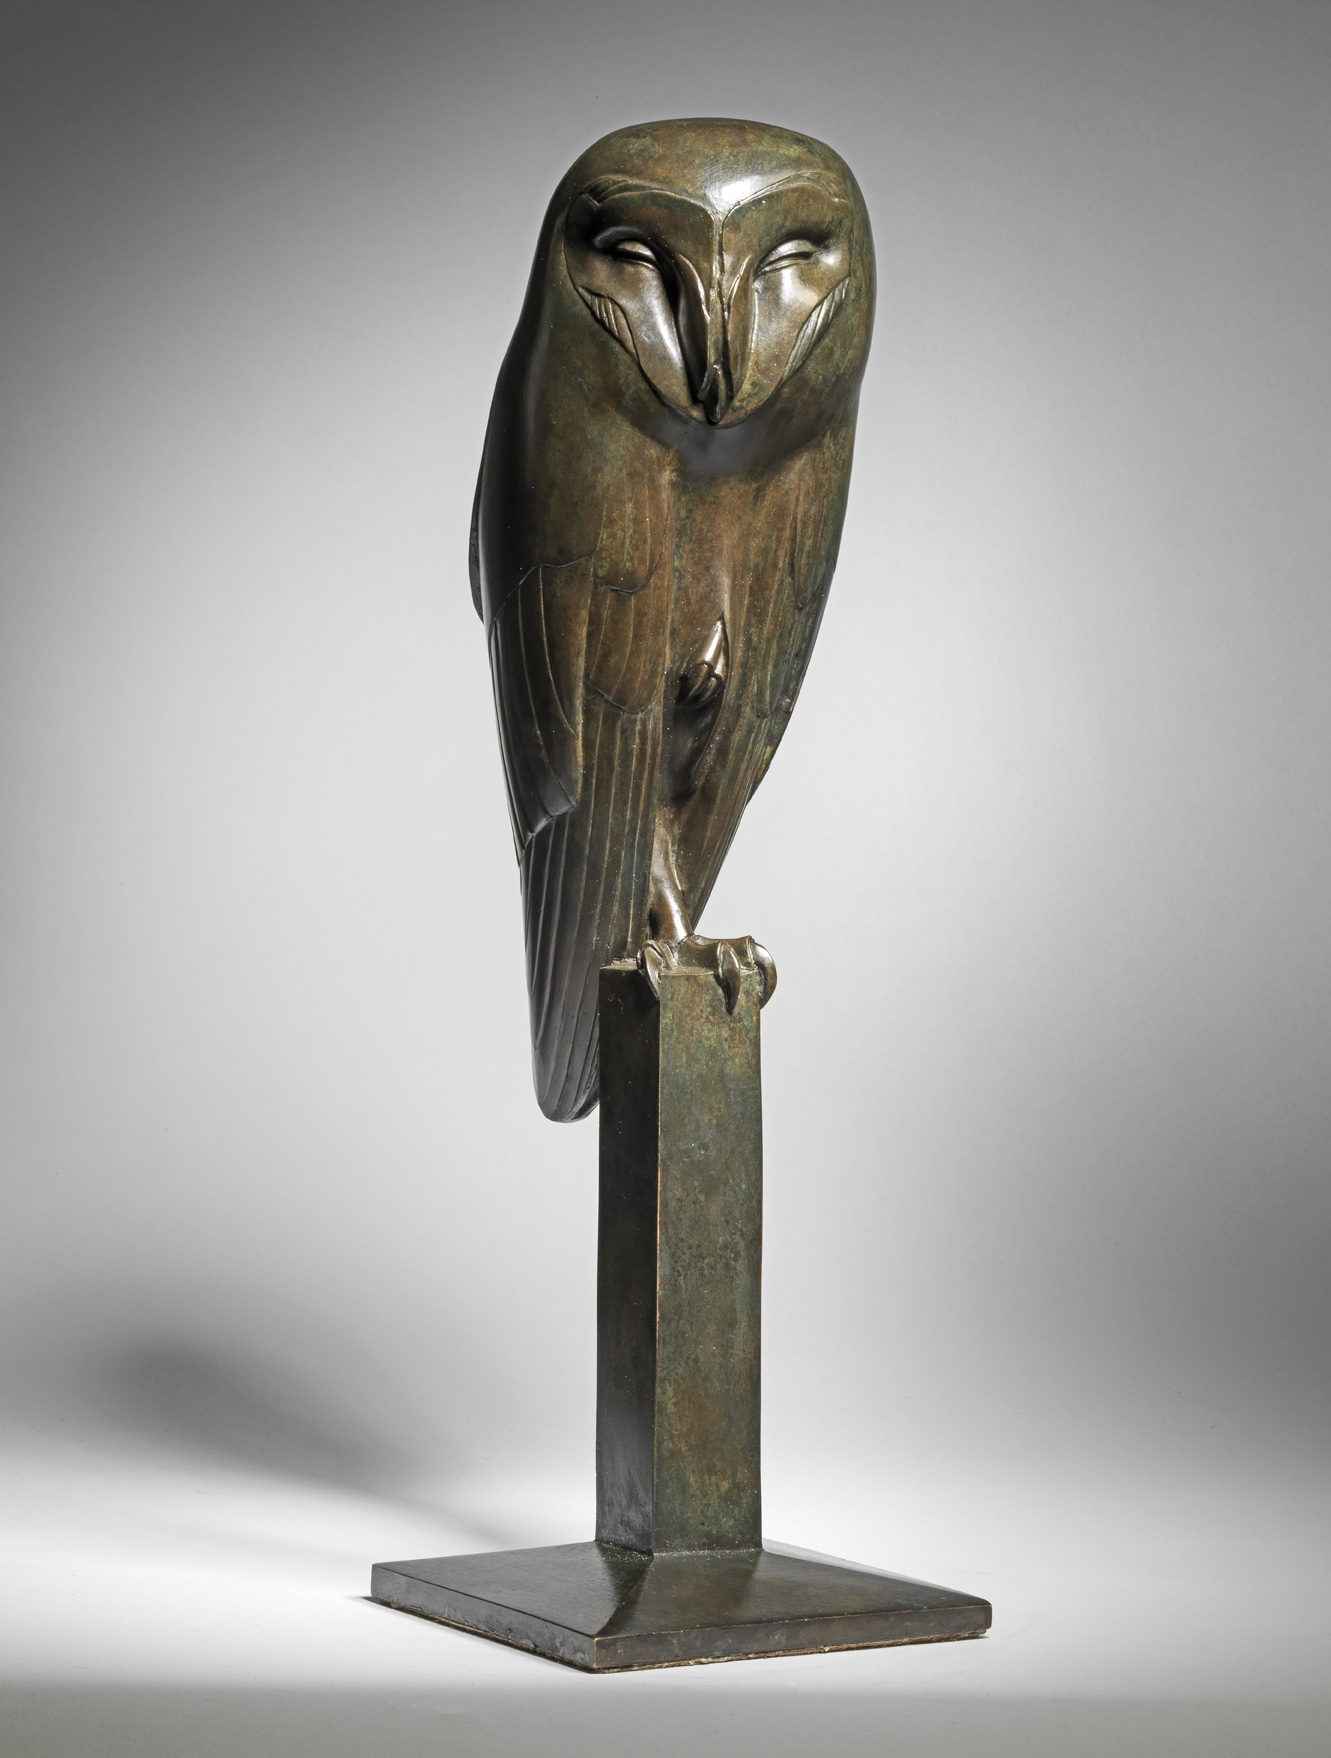 Barn Owl on a Post, c. 1928